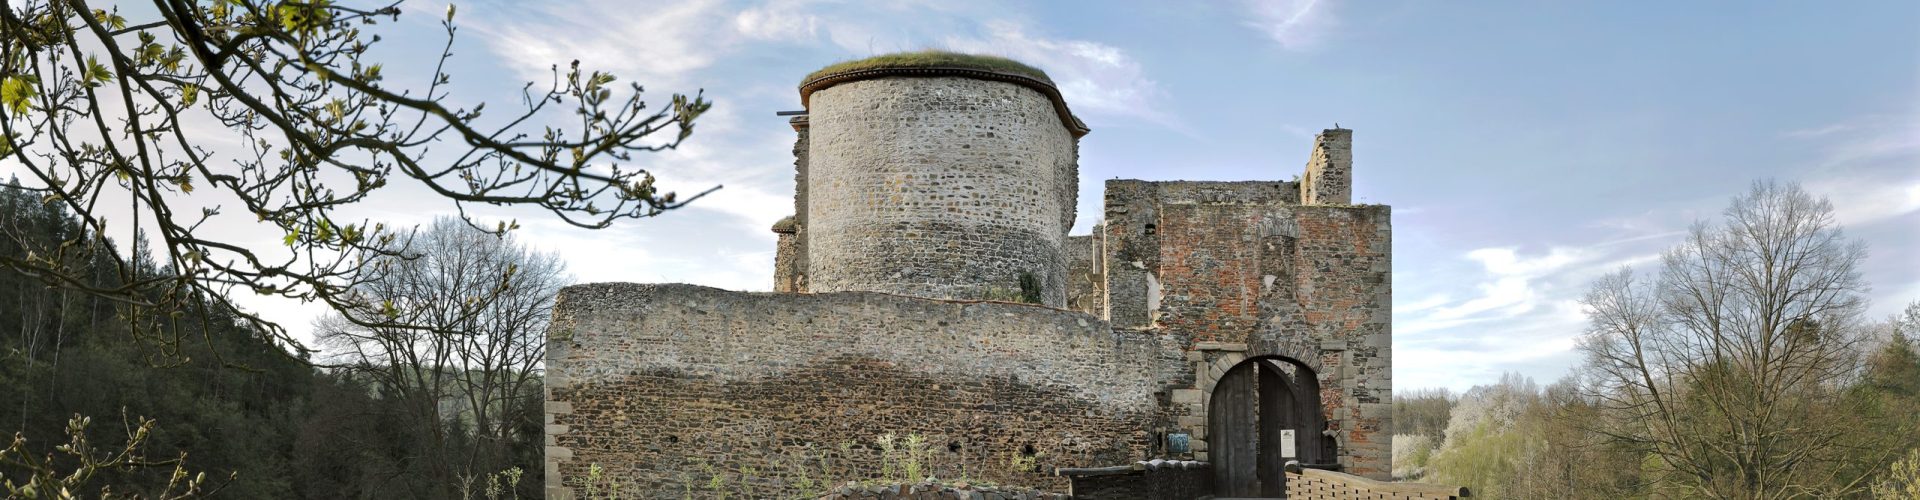 Vstupní brána a hradby obklopující poloválcovou věž